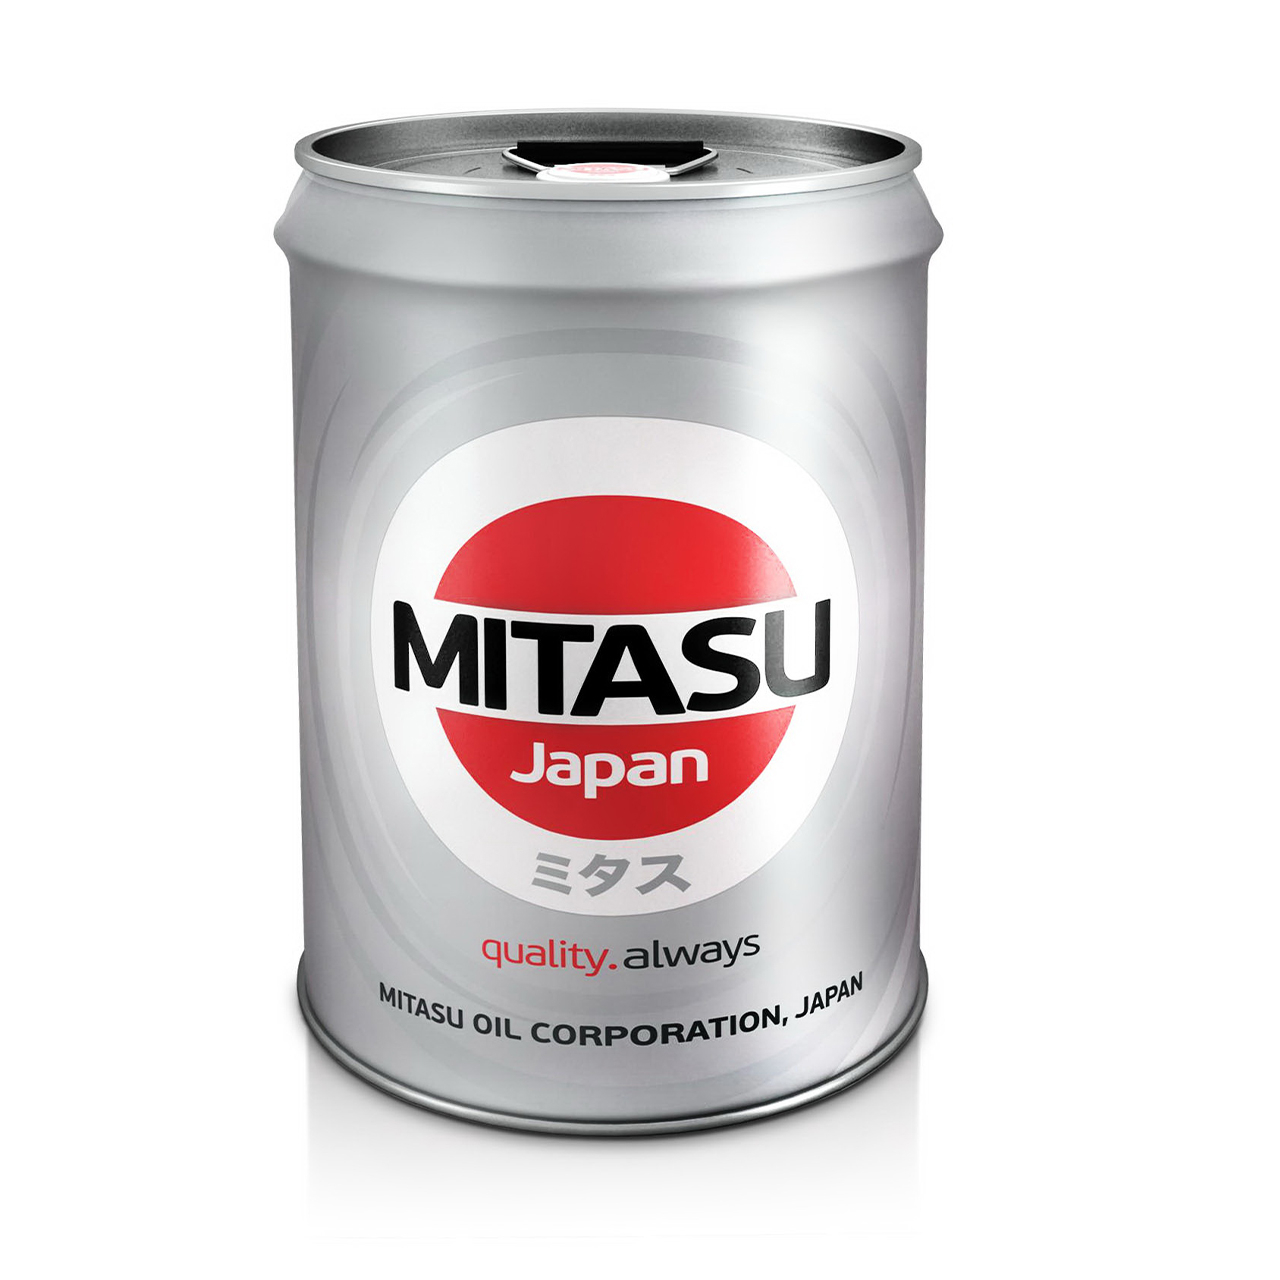 Купить запчасть MITASU - MJ21120 Масло моторное MITASU CJ-4/SM 5w40 20л синтетическое для дизельных двигателей MJ211 (1/1) Япония